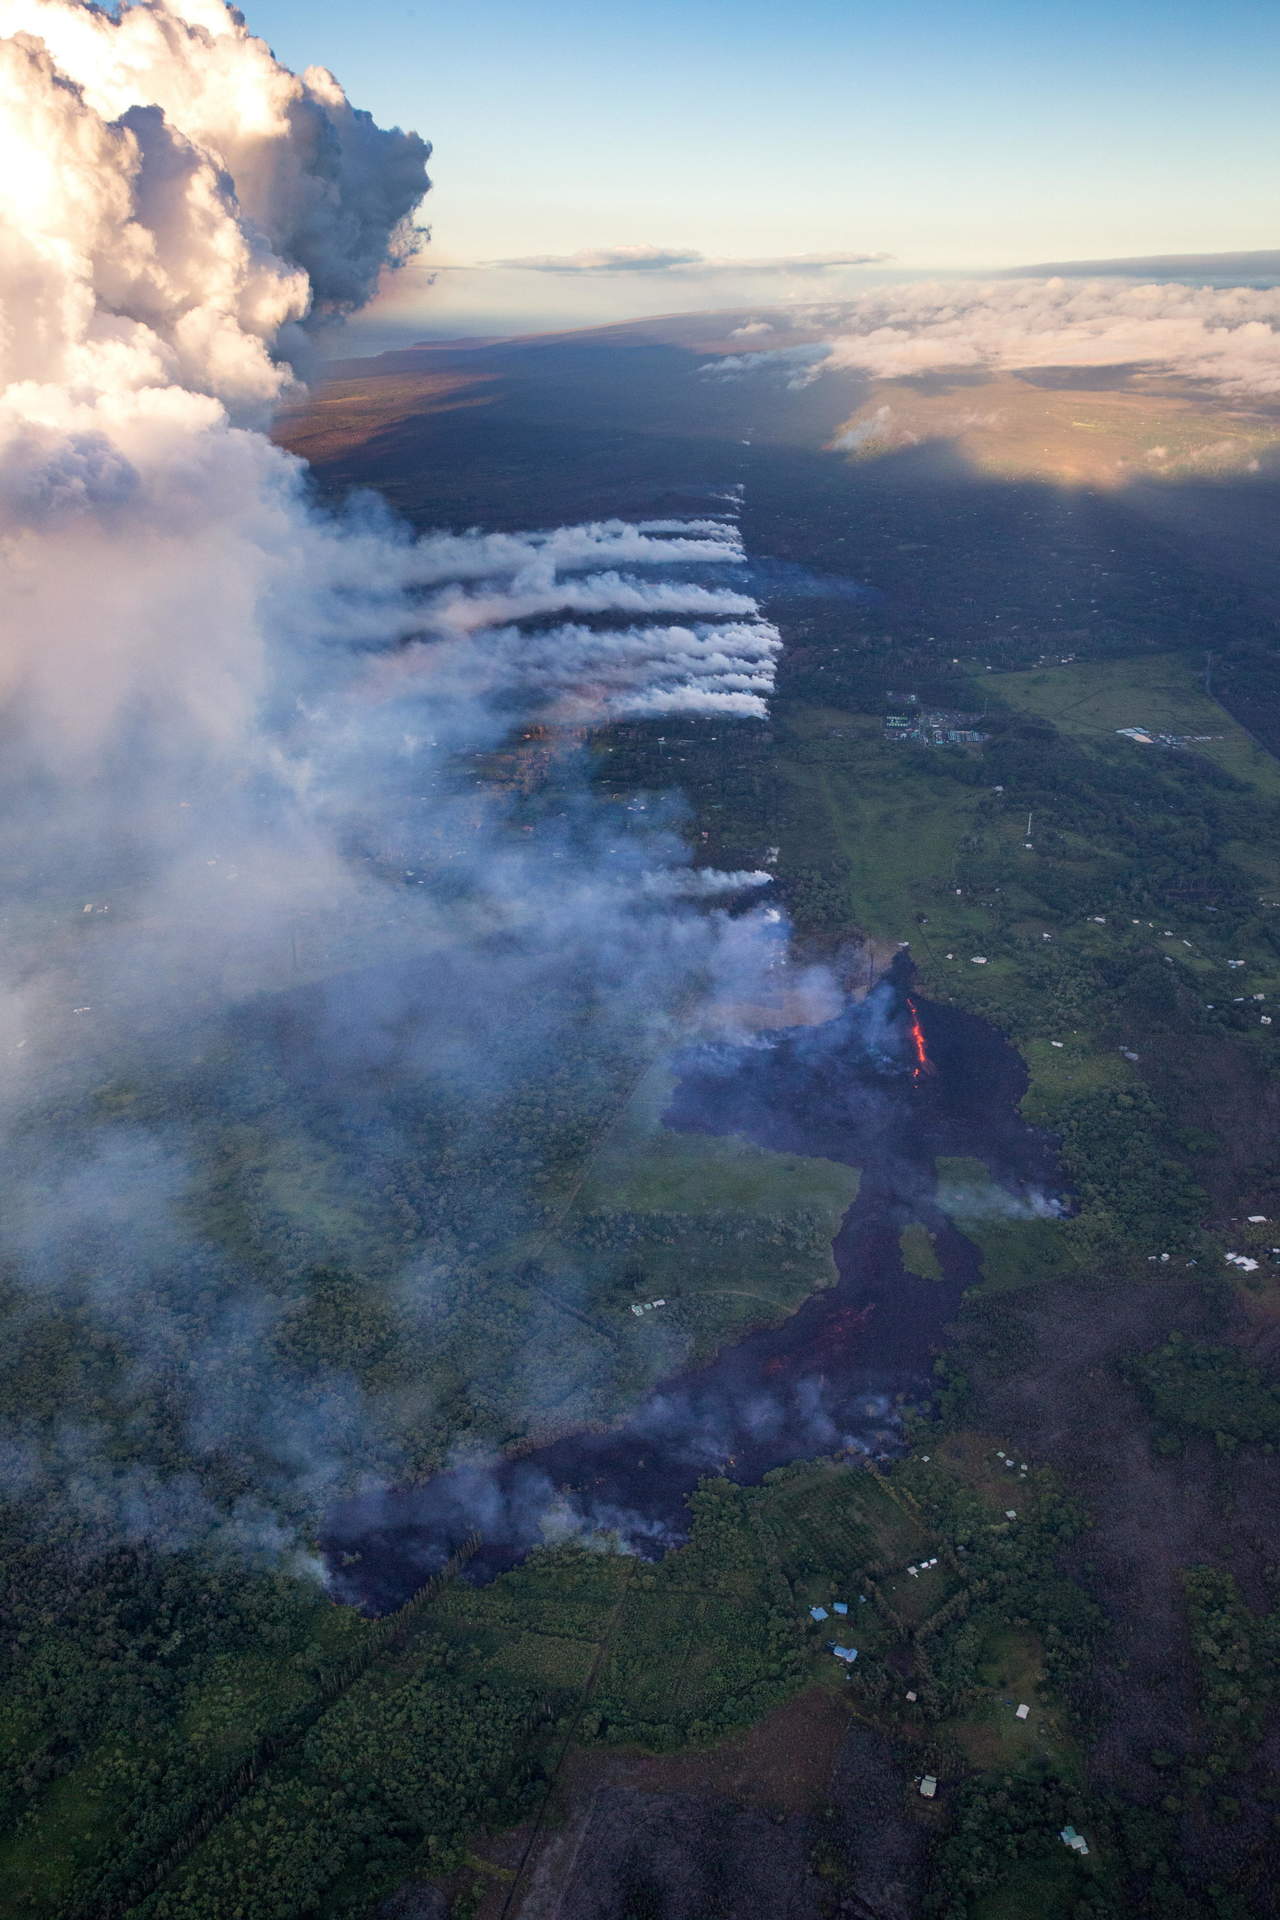 Según el informe, la erupción de cenizas del cráter Halemaumau, del volcán Kilauea, aumentó su intensidad, por lo que los expertos advierten que la actividad podría volverse más explosiva en cualquier momento. (ARCHIVO)